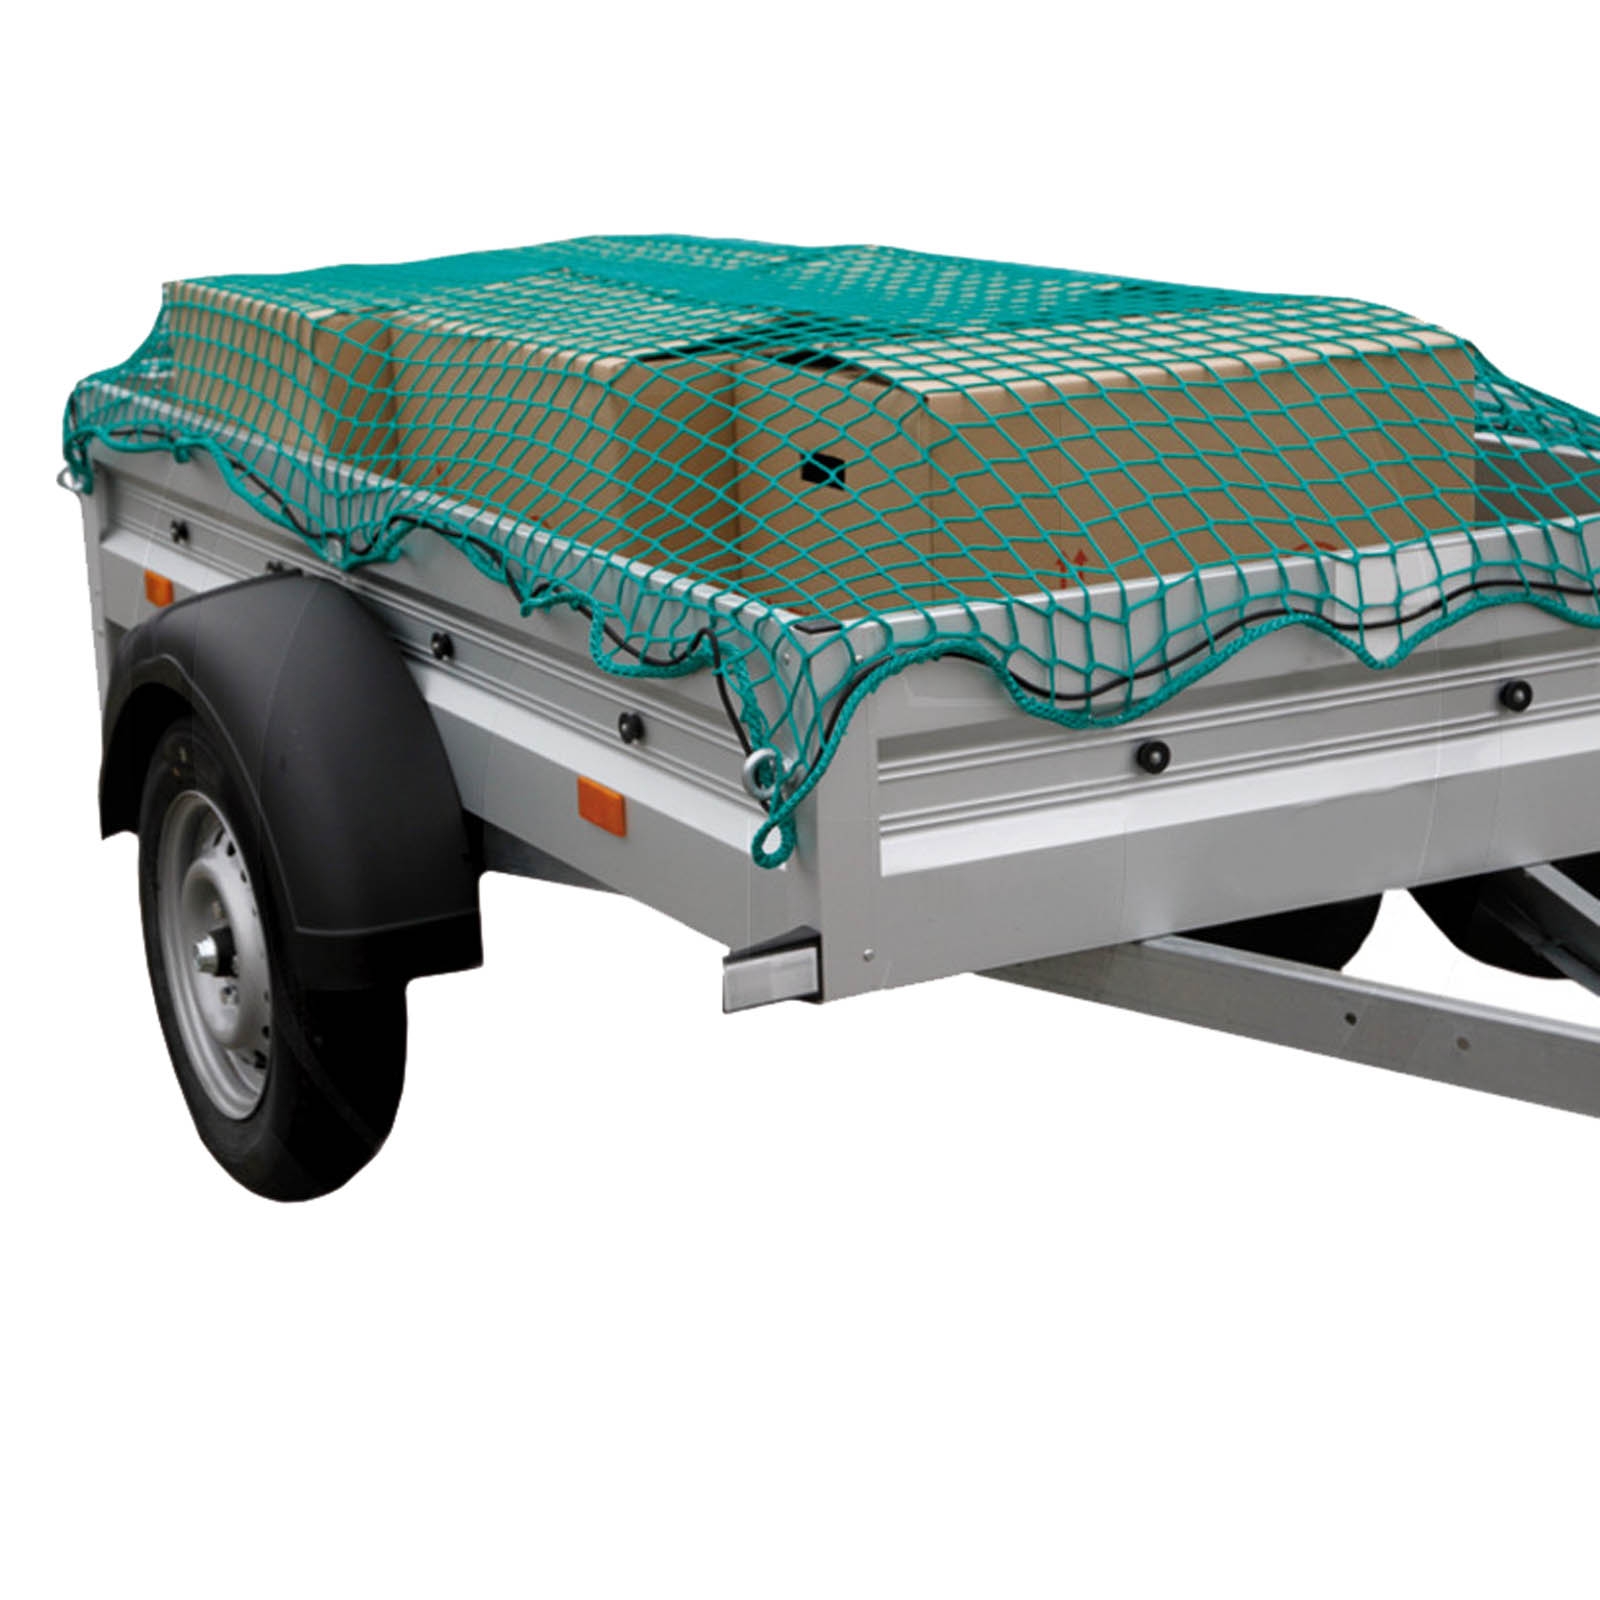 Abdecknetz für PKW Anhänger 45 mm grün 3,0 mm 3,0m x 2,0m Ladungssicherung, Ladungssicherung und Warnmarkierungen, Werkzeug, Landtechnik